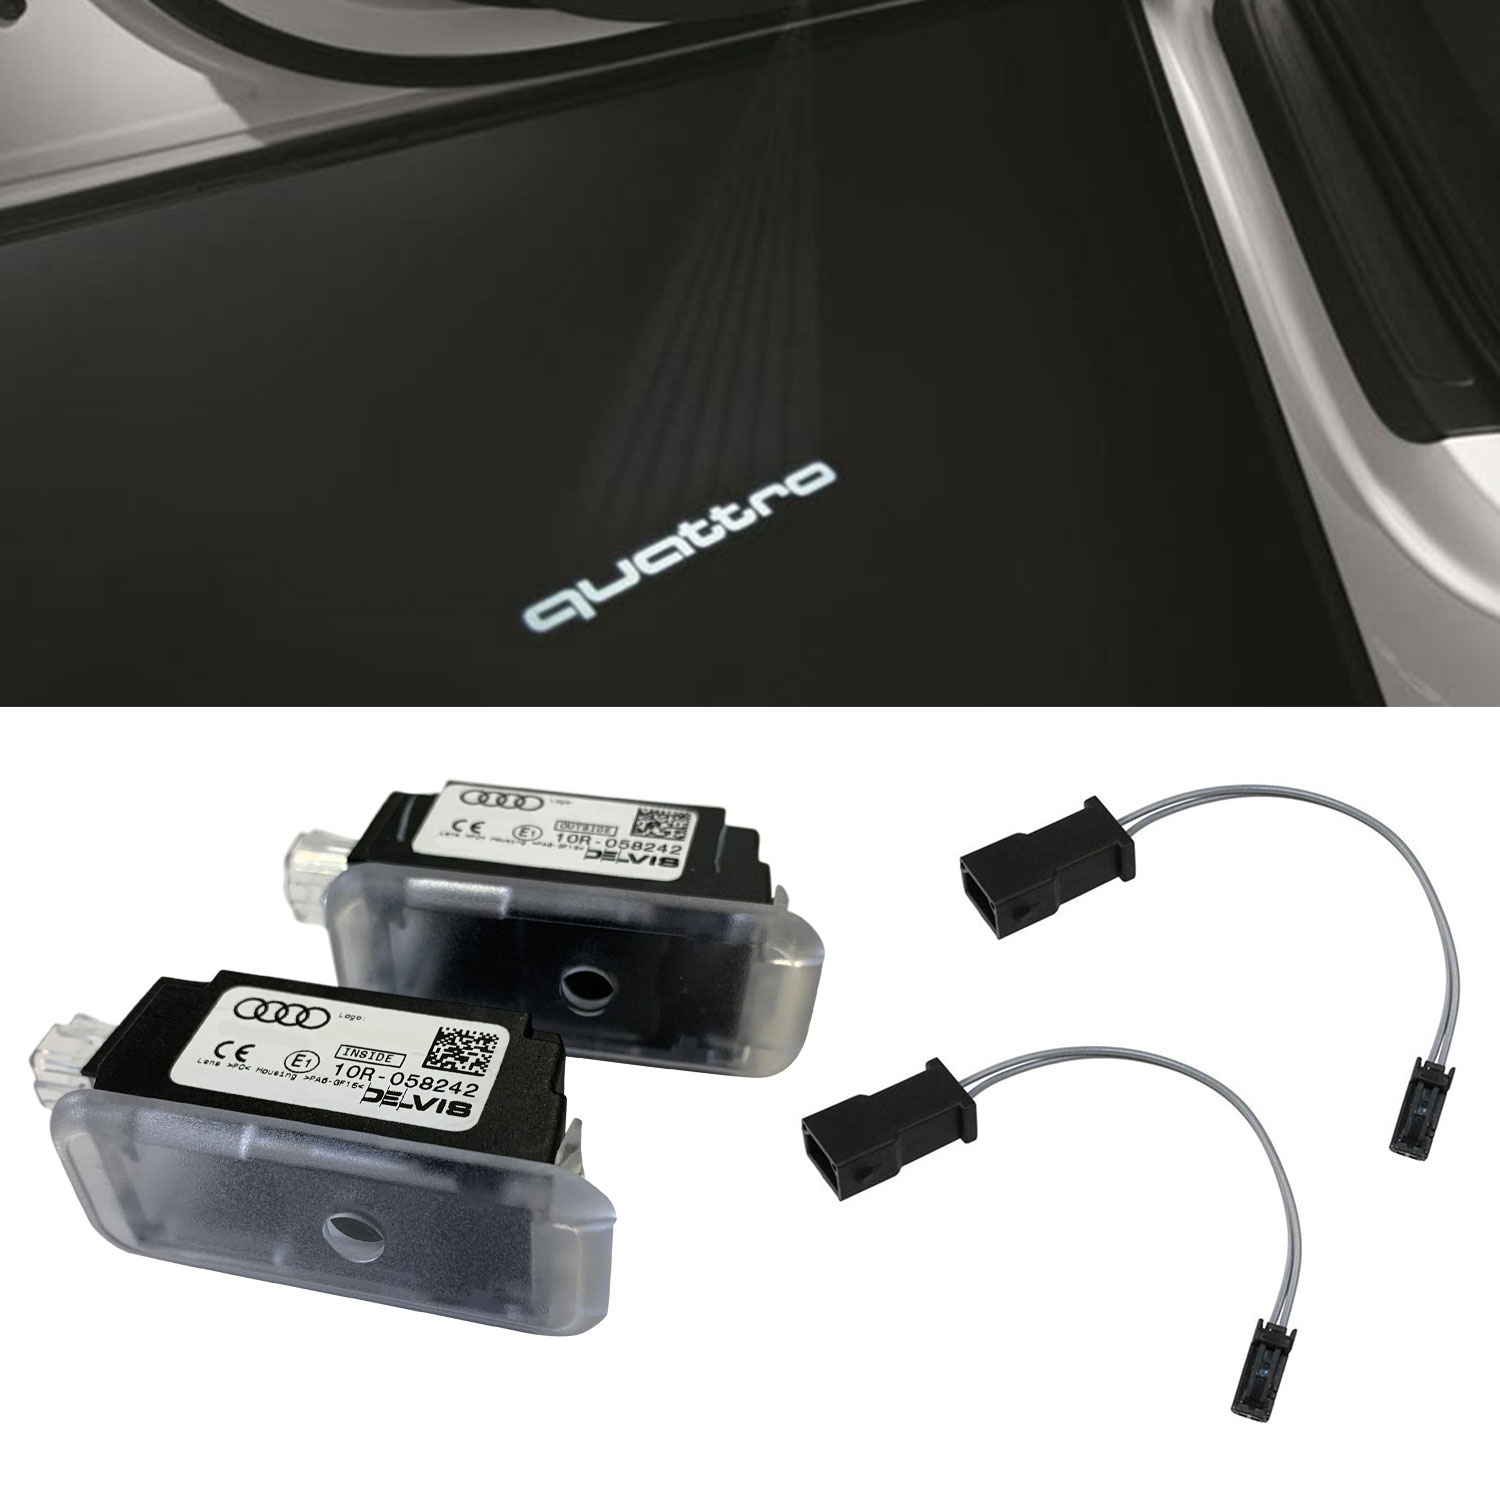 Original Audi Qauttro LED Einstiegsbeleuchtung Tür Logo + Adapter für viele Audi von Tuning Fanatics